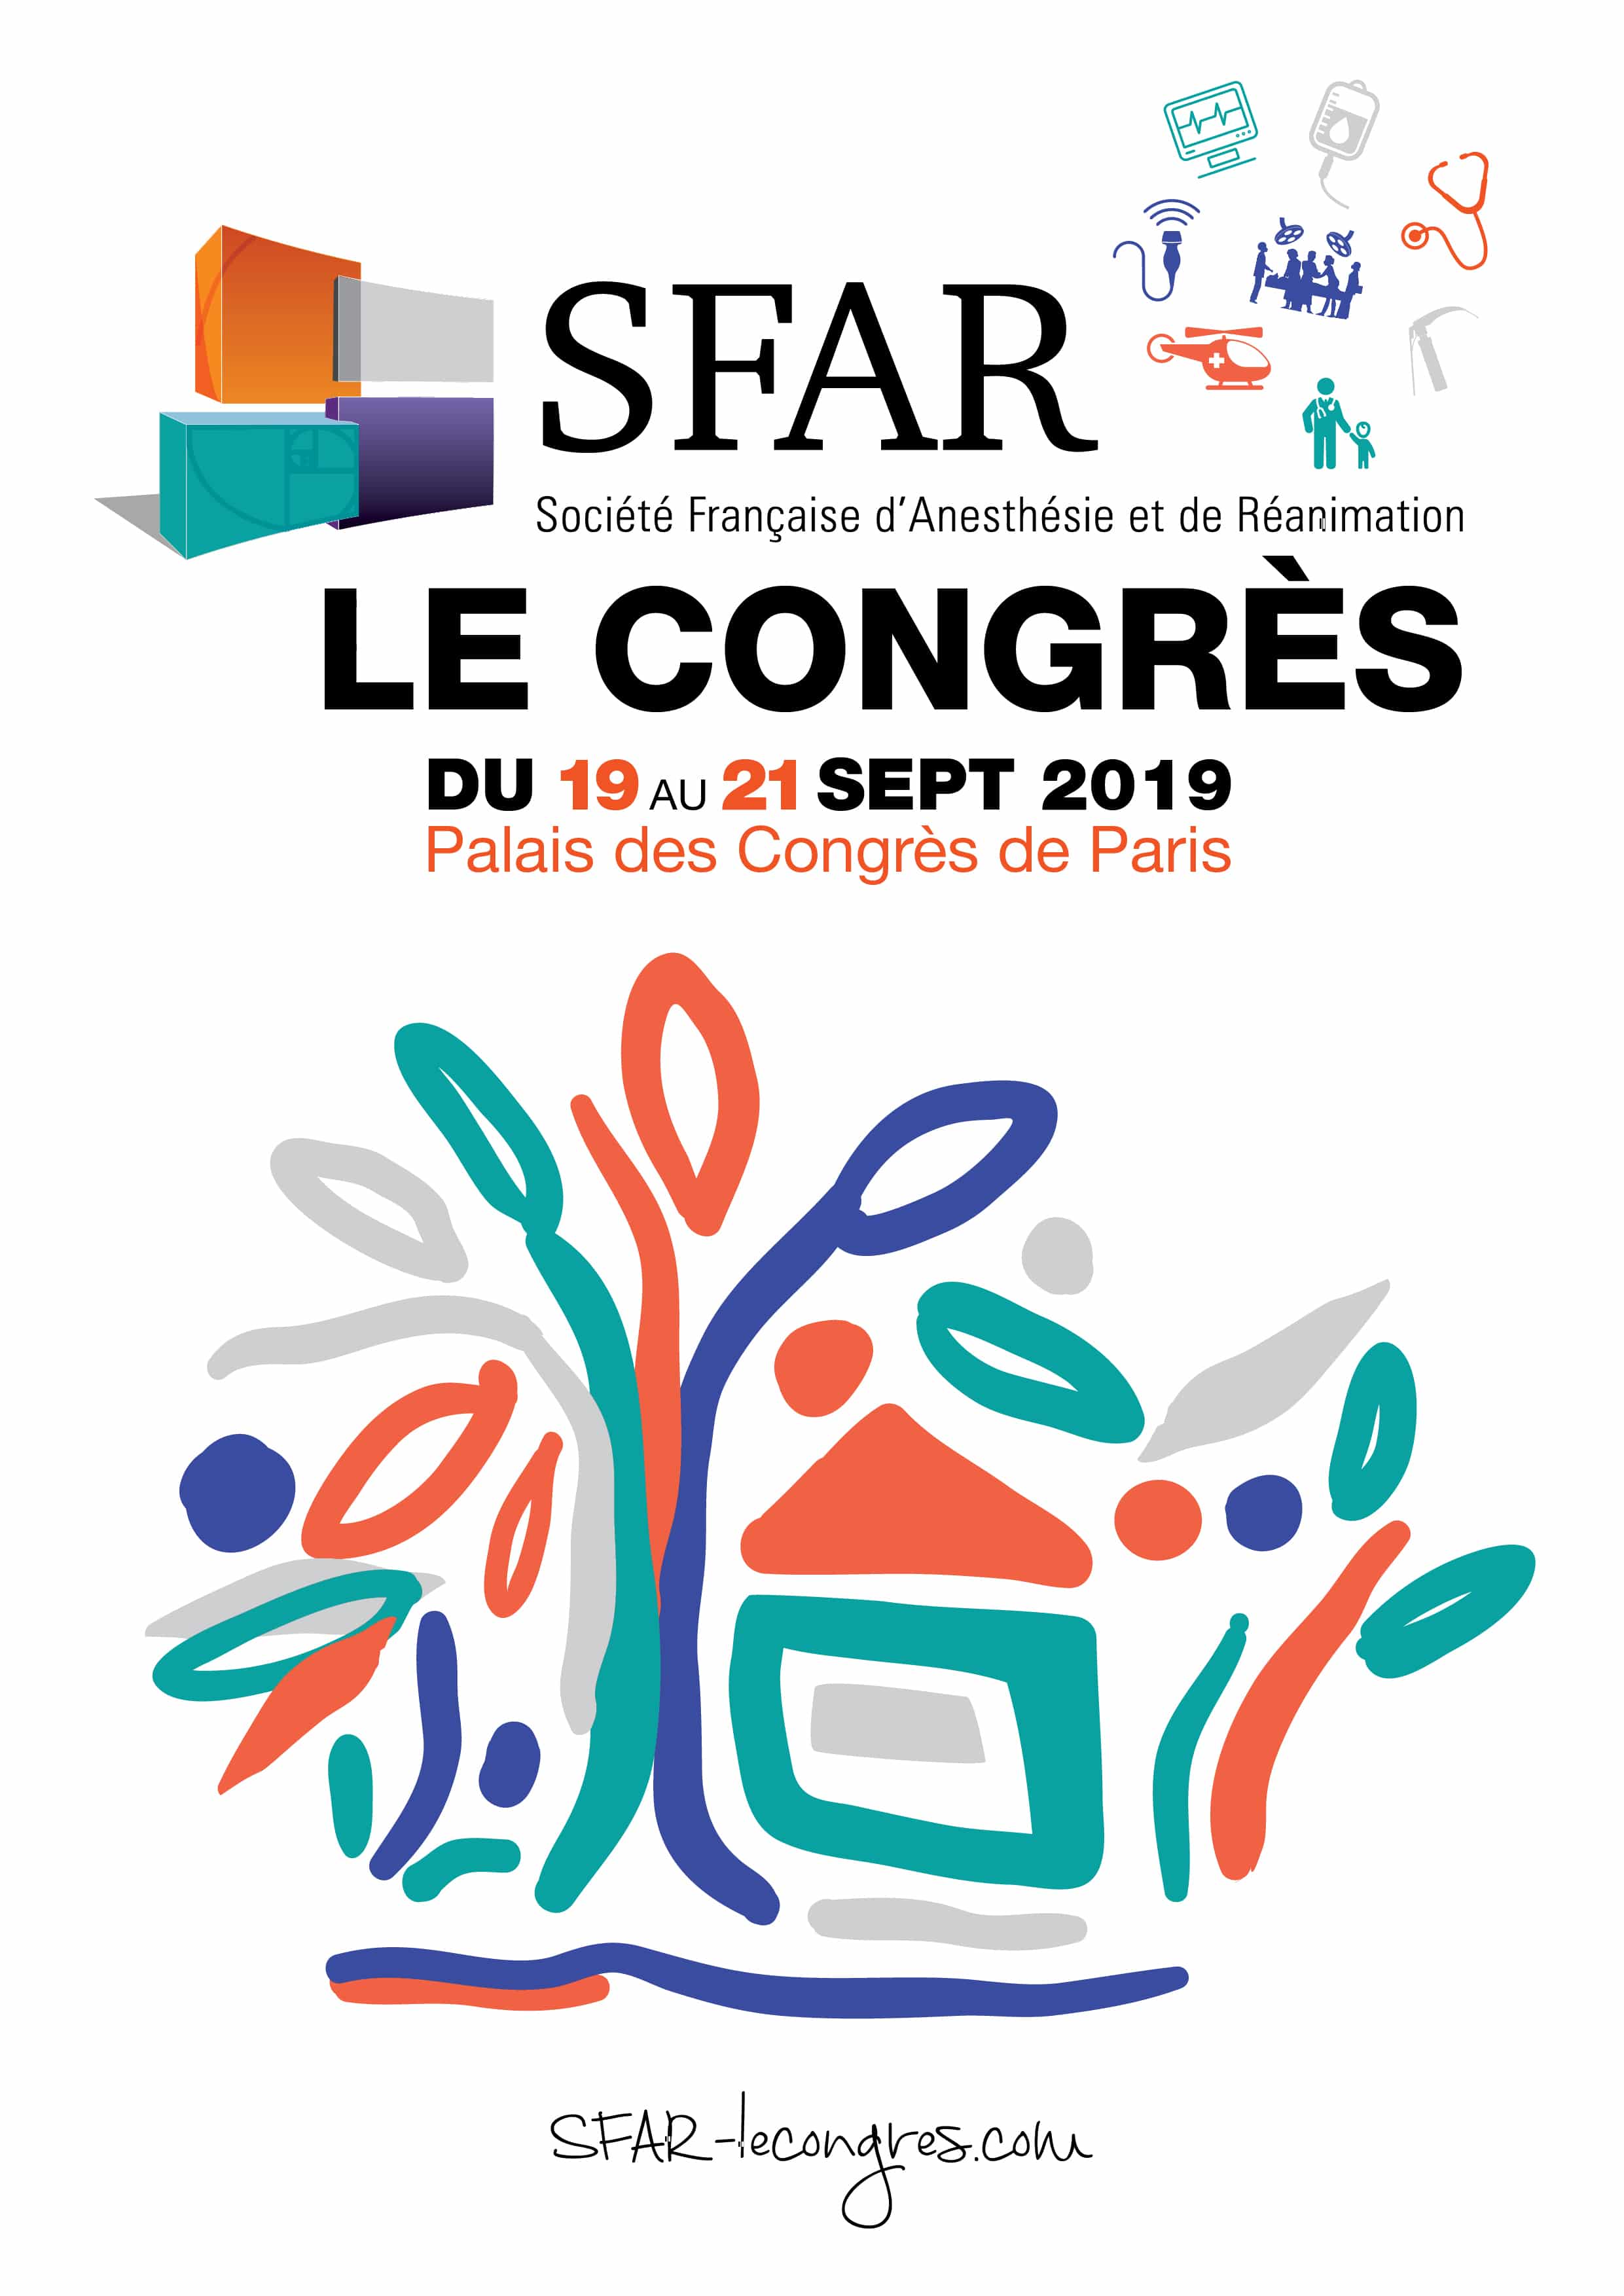 Congrès de la Société Française d’Anesthésie et de Réanimation SFAR 2019